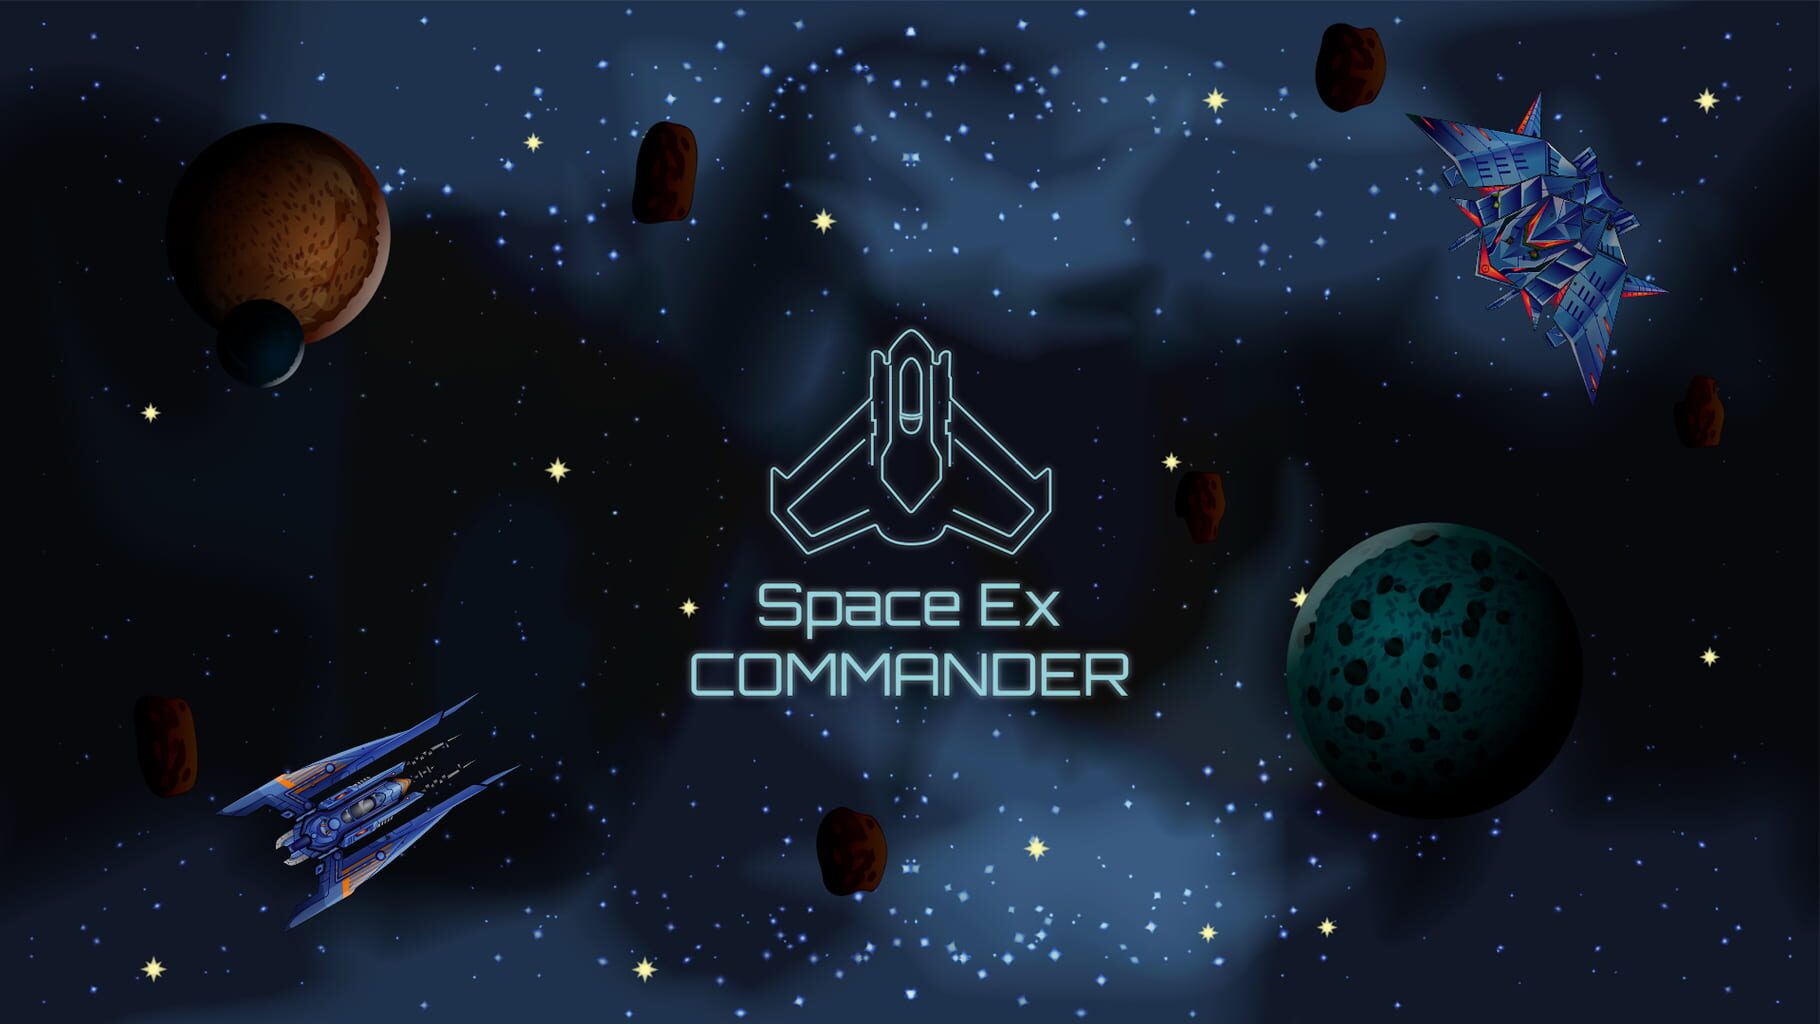 SpaceEx Commander artwork